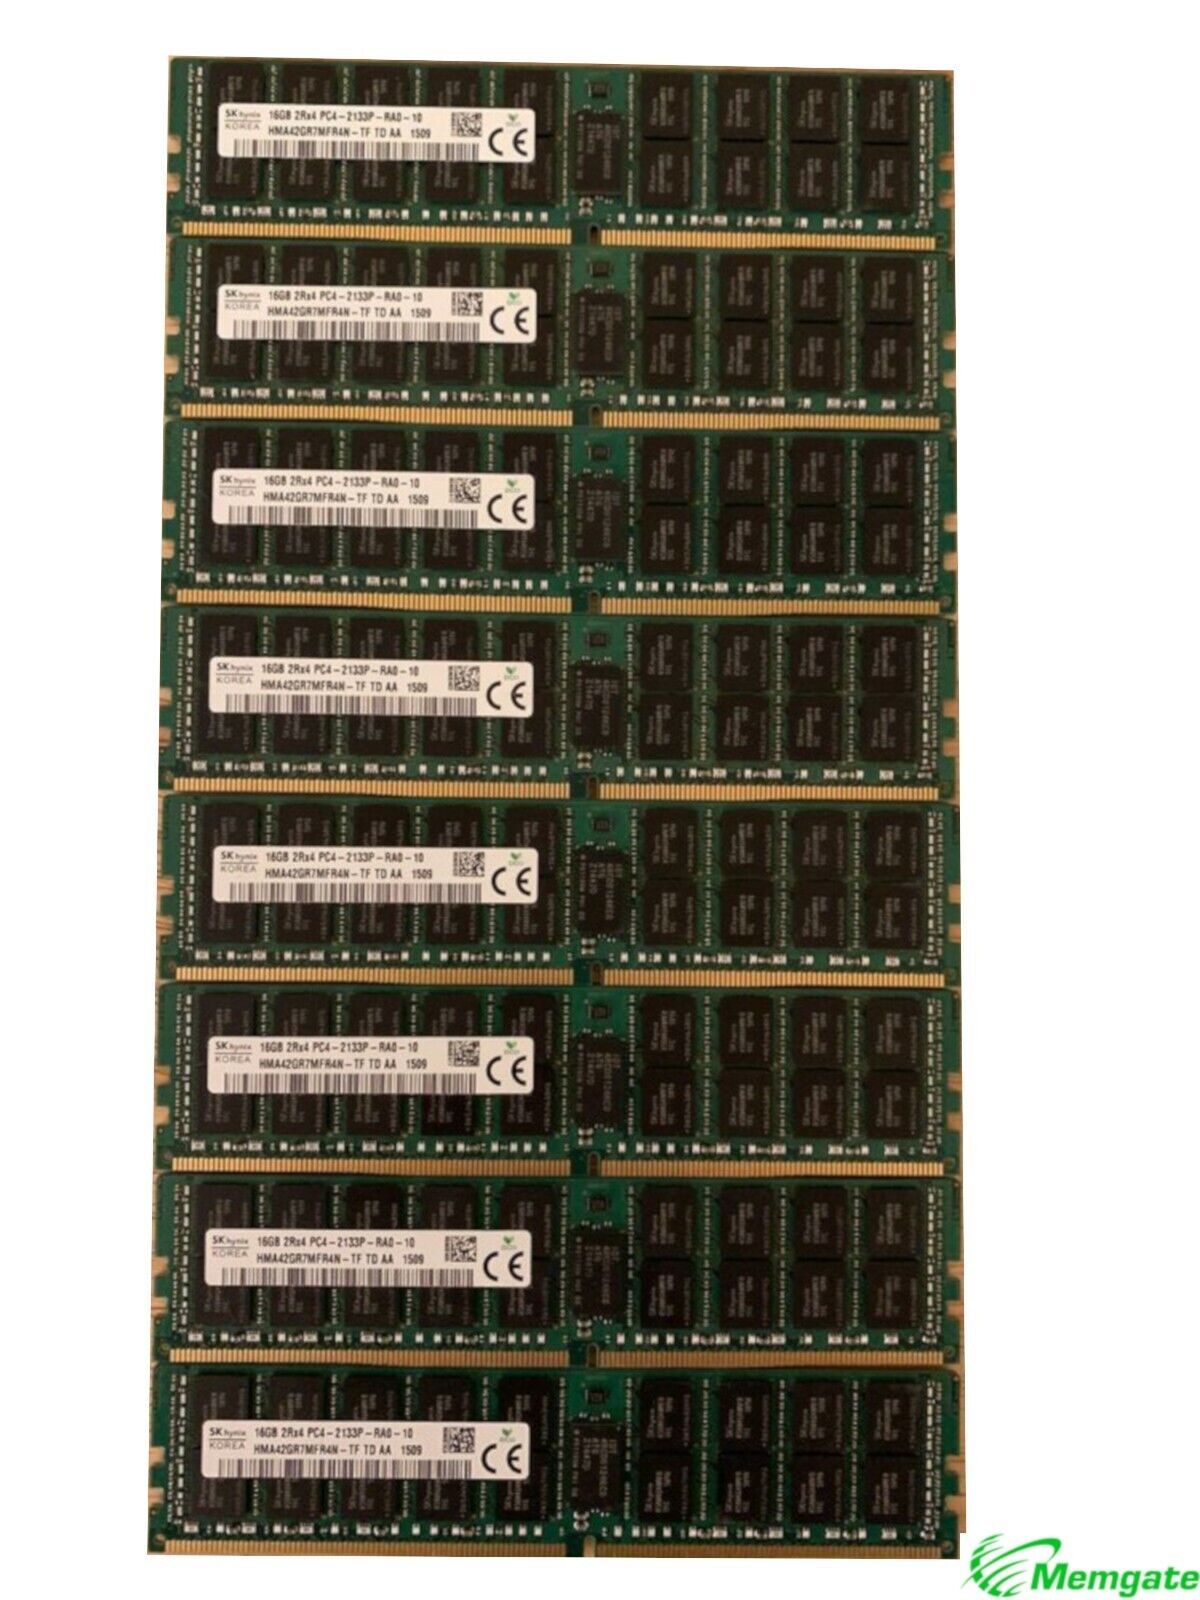 128GB (8x16GB) PC4-17000P-R DDR4 2133P ECC RDIMM Memory for Dell PowerEdge T630